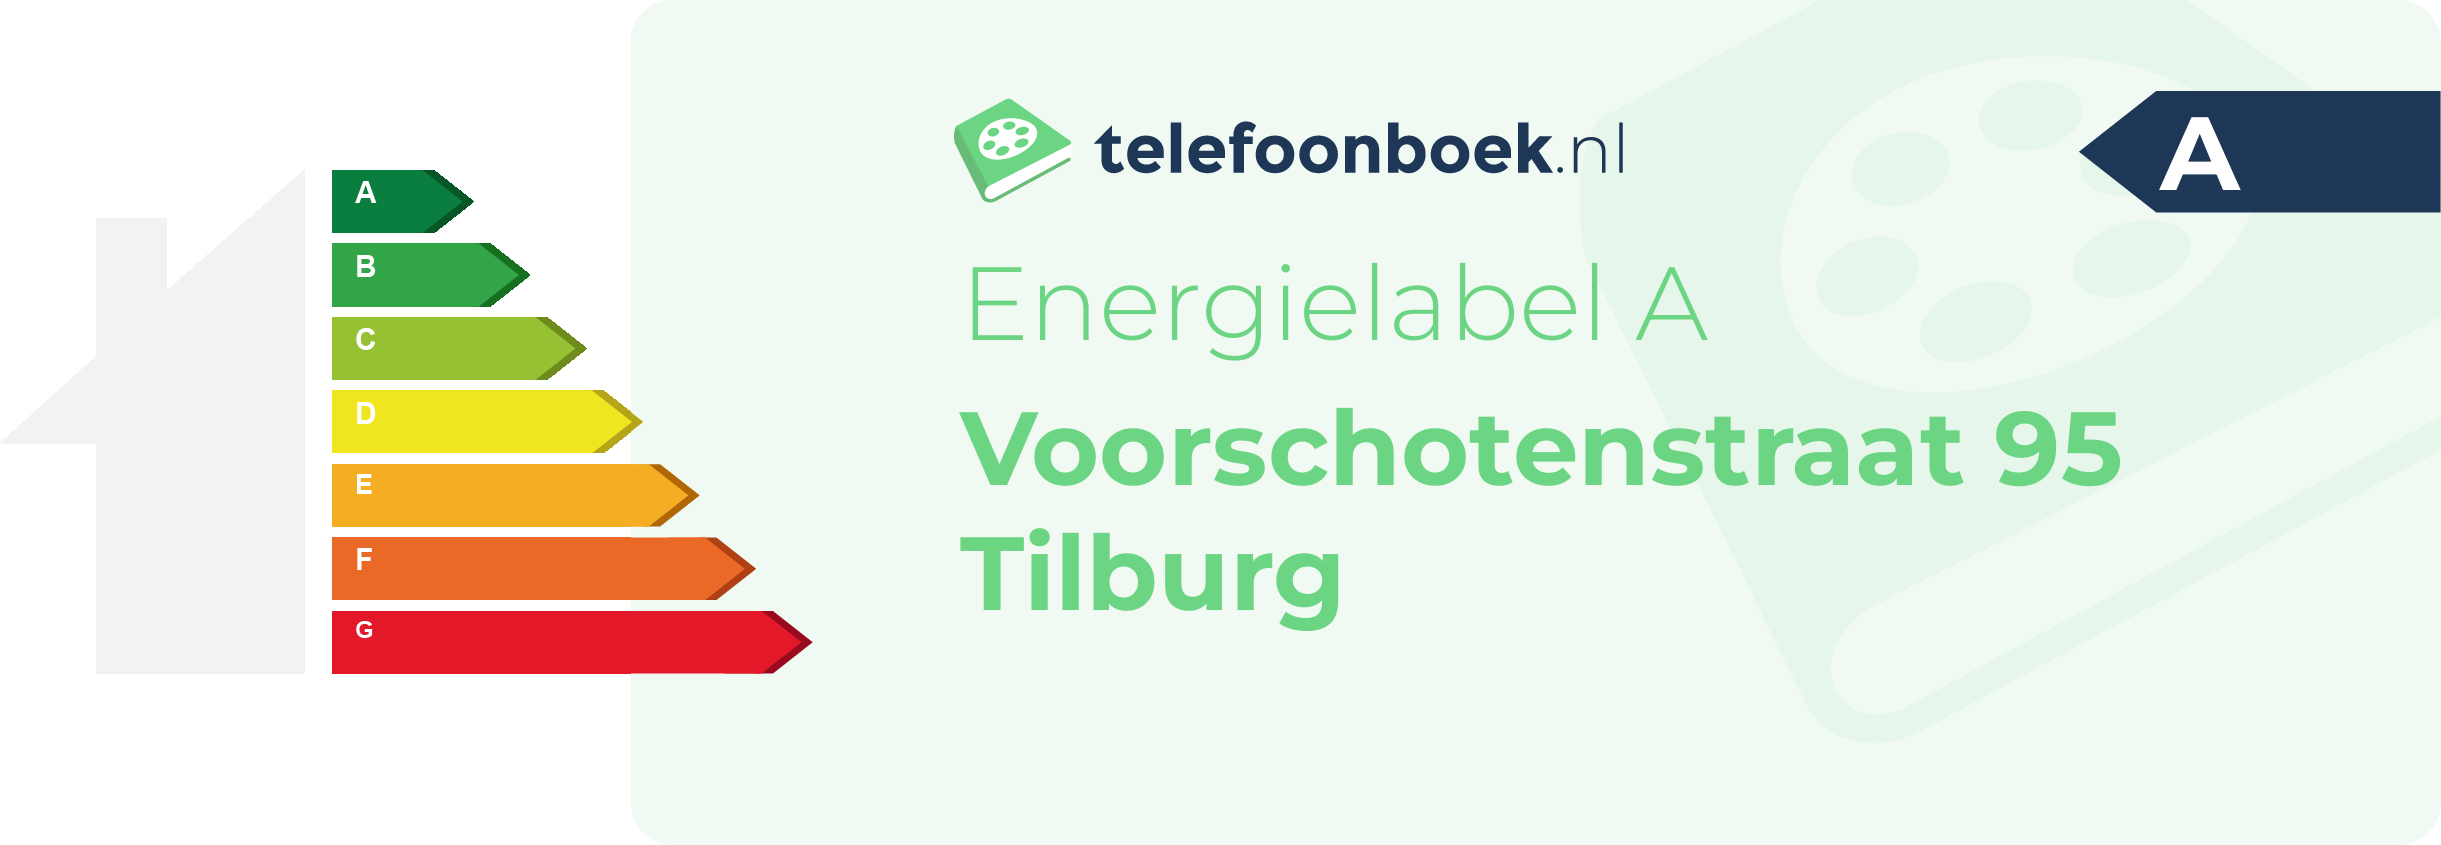 Energielabel Voorschotenstraat 95 Tilburg